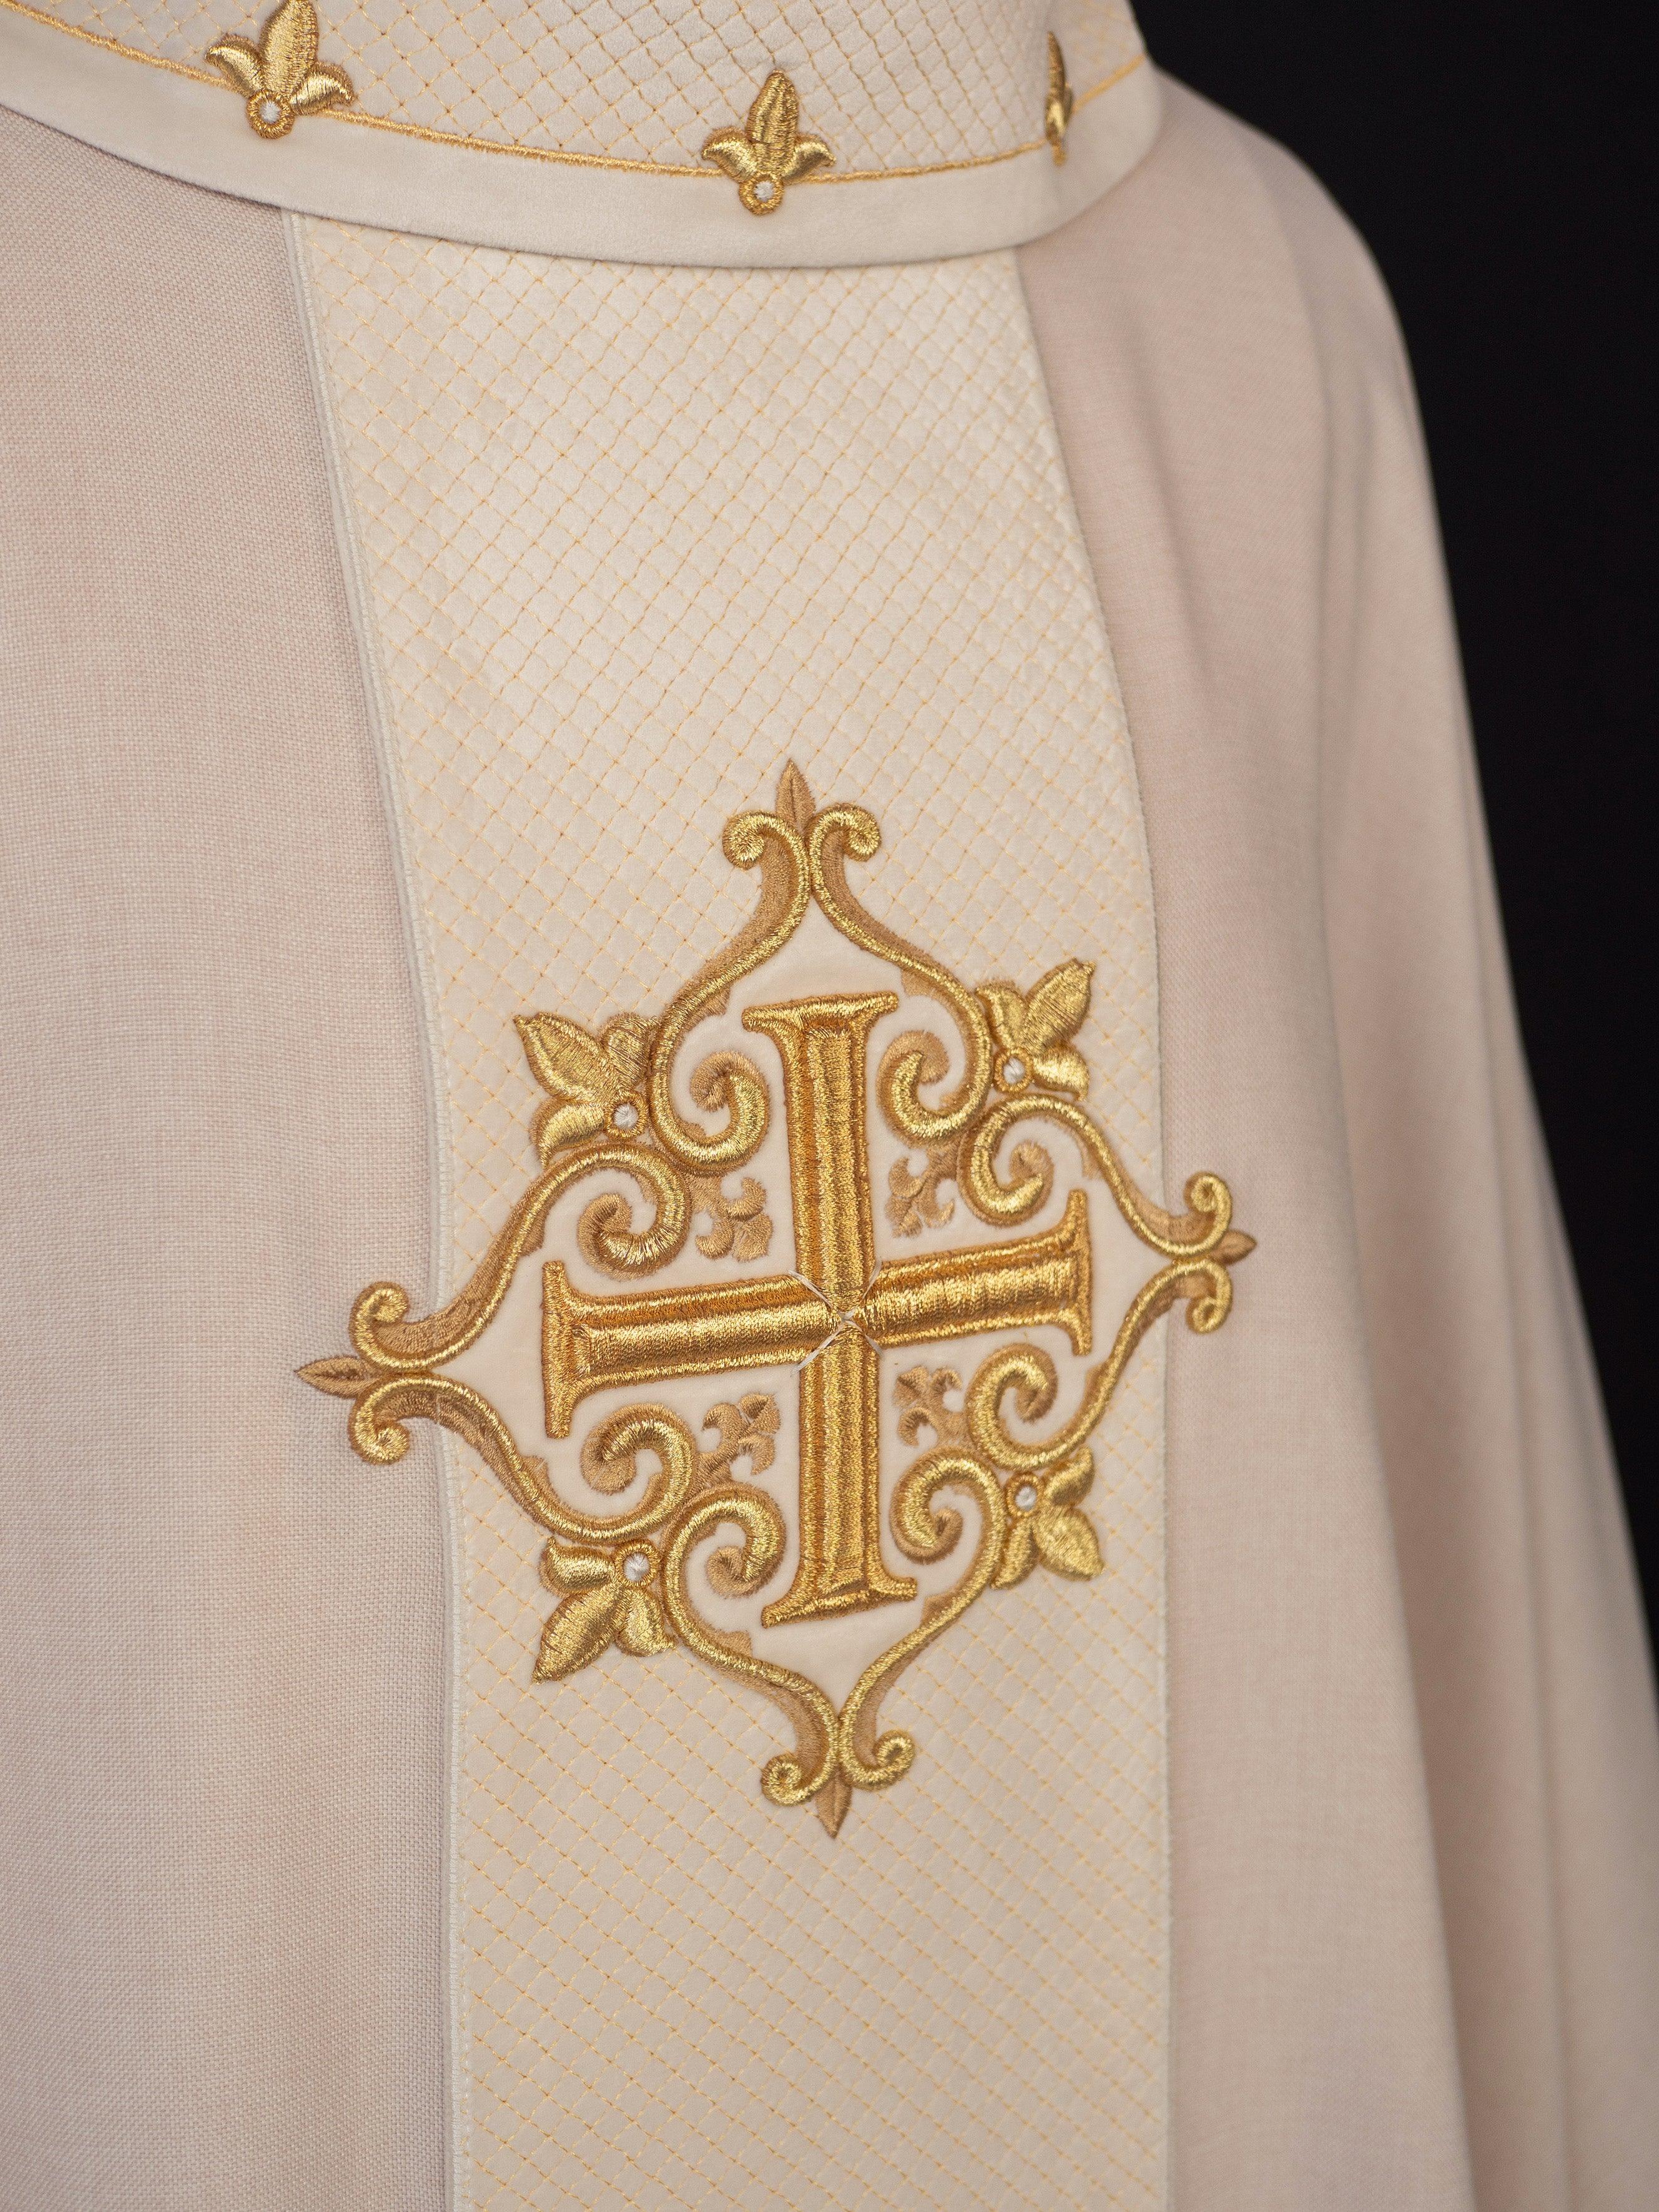 Ornat haftowany na aksamicie z symbolem Krzyż Ecru